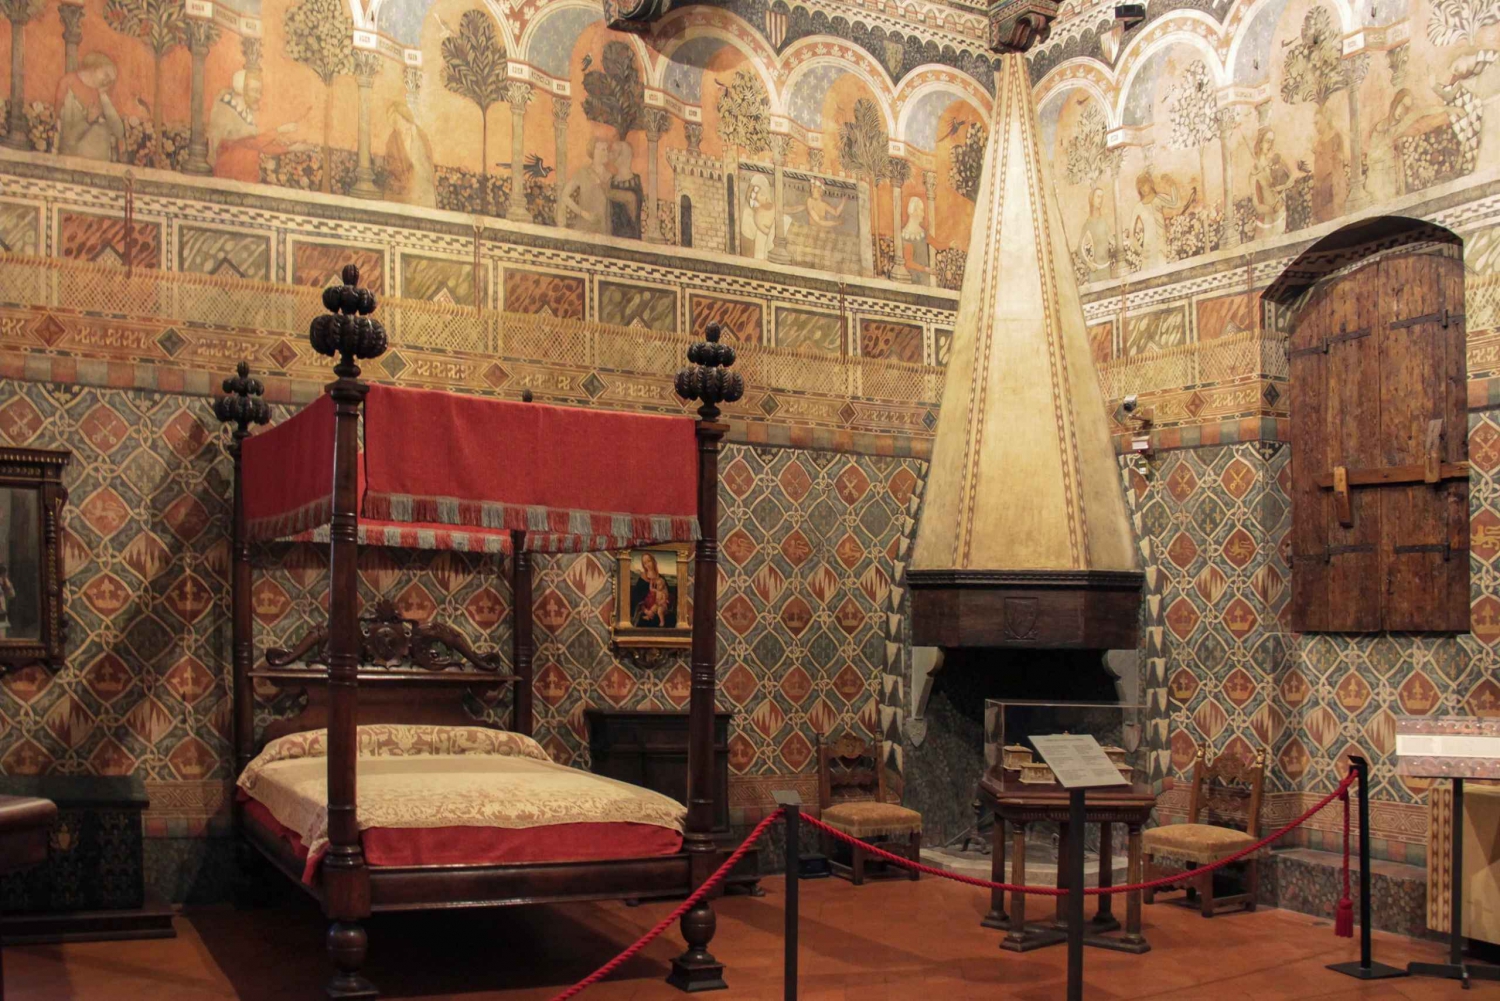 Florenz: 1-stündige private Tour durch ein altes florentinisches Haus